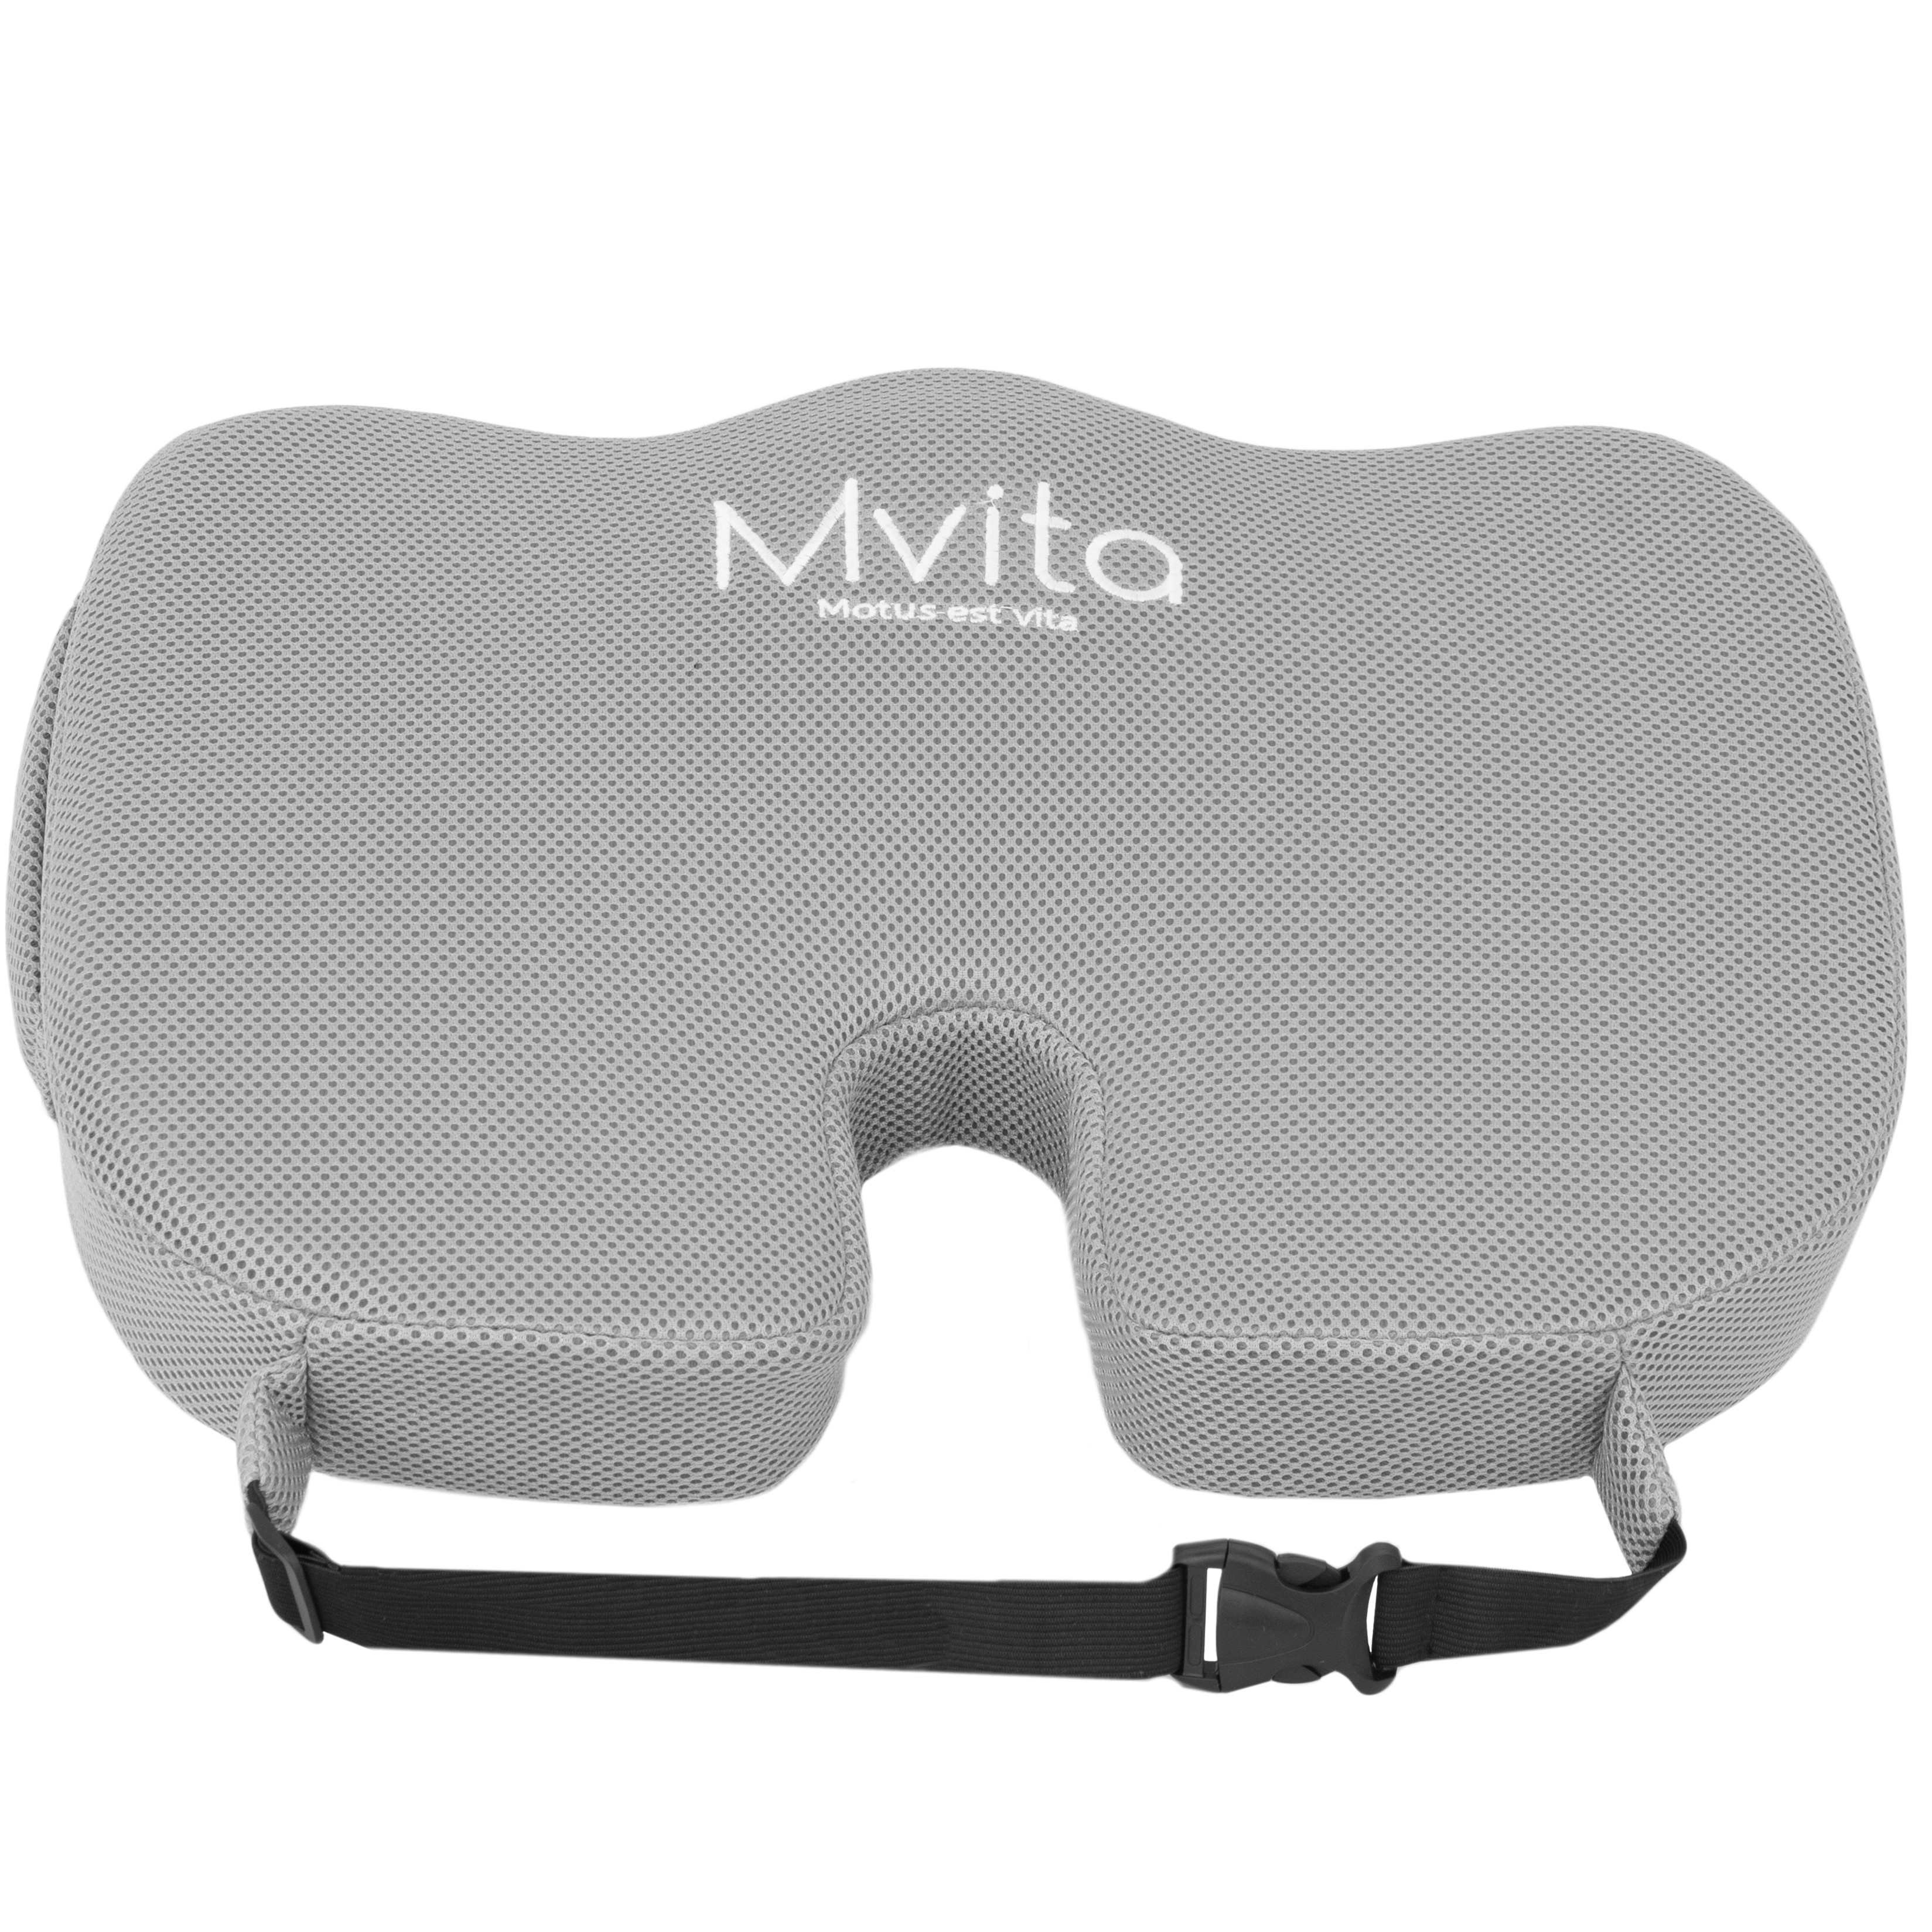 Ортопедическая подушка для сидения с эффектом памяти Mvita Classic серая